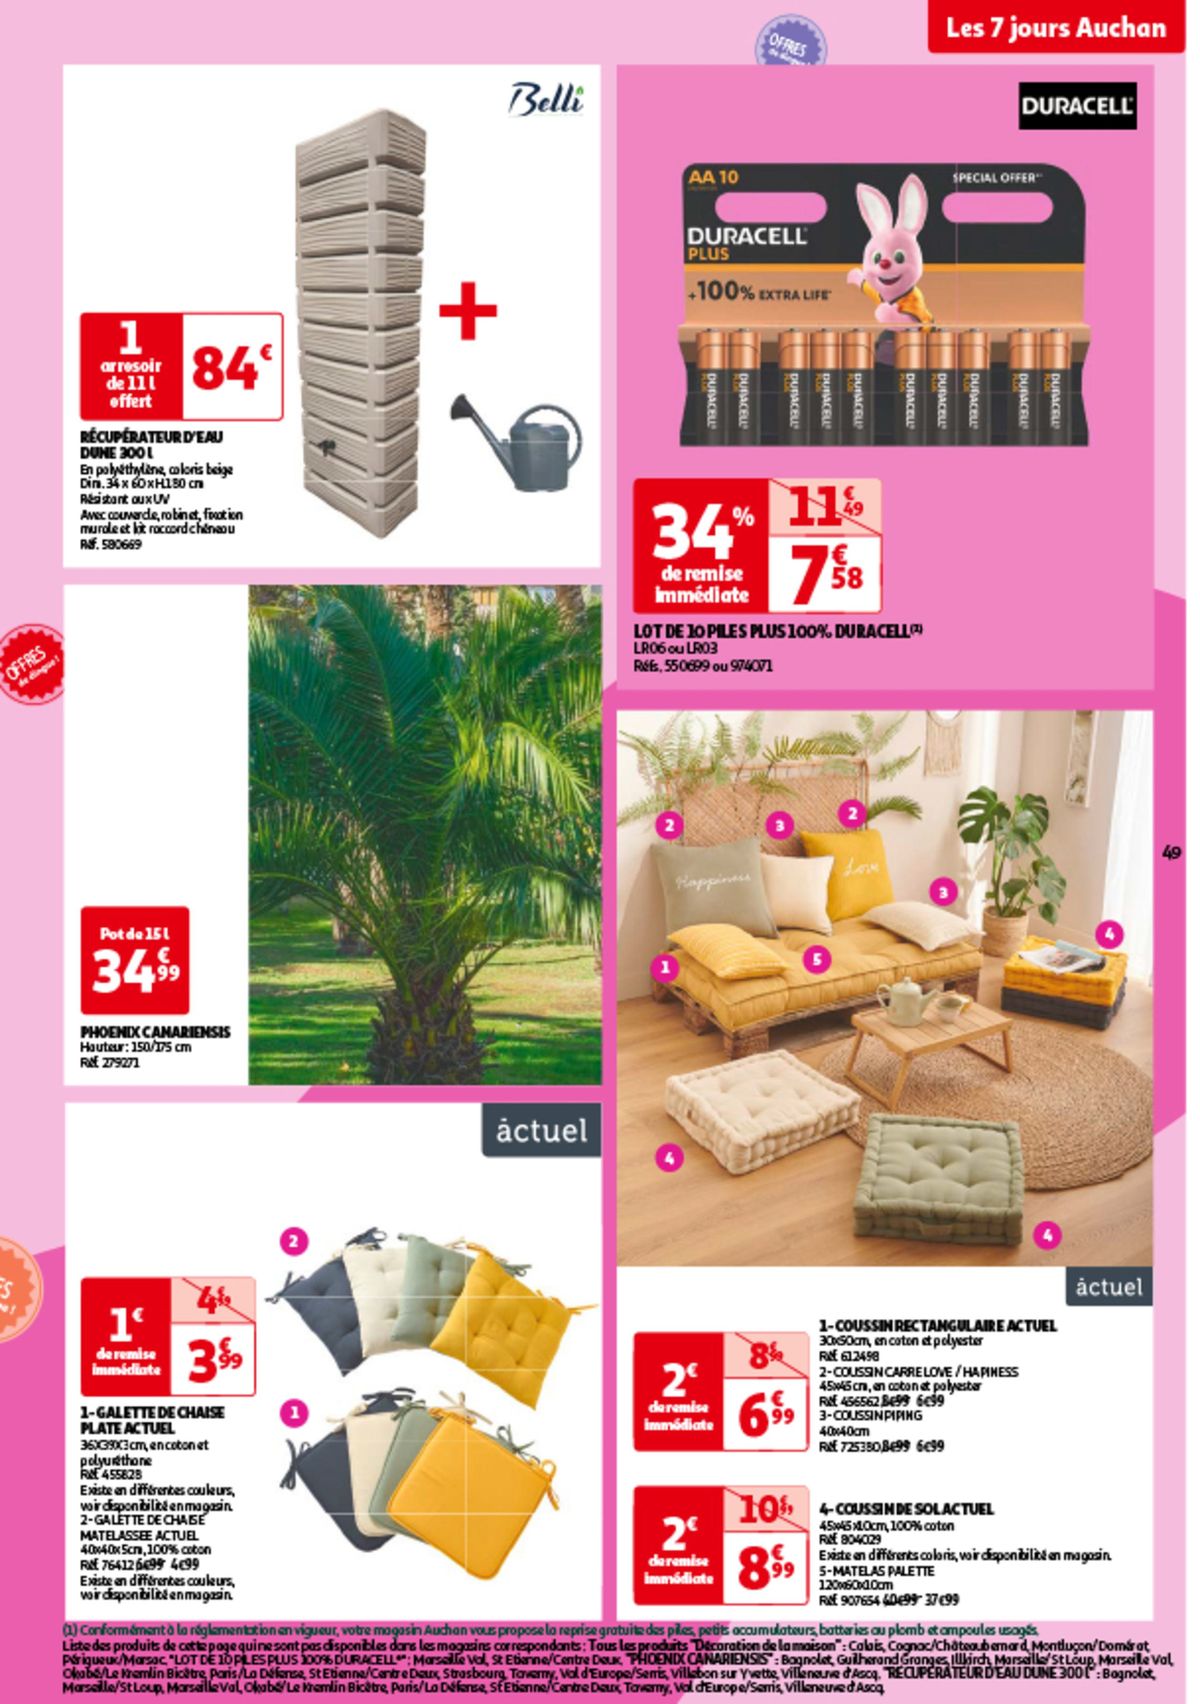 Catalogue Les 7 jours Auchan, c'est maintenant !, page 00049